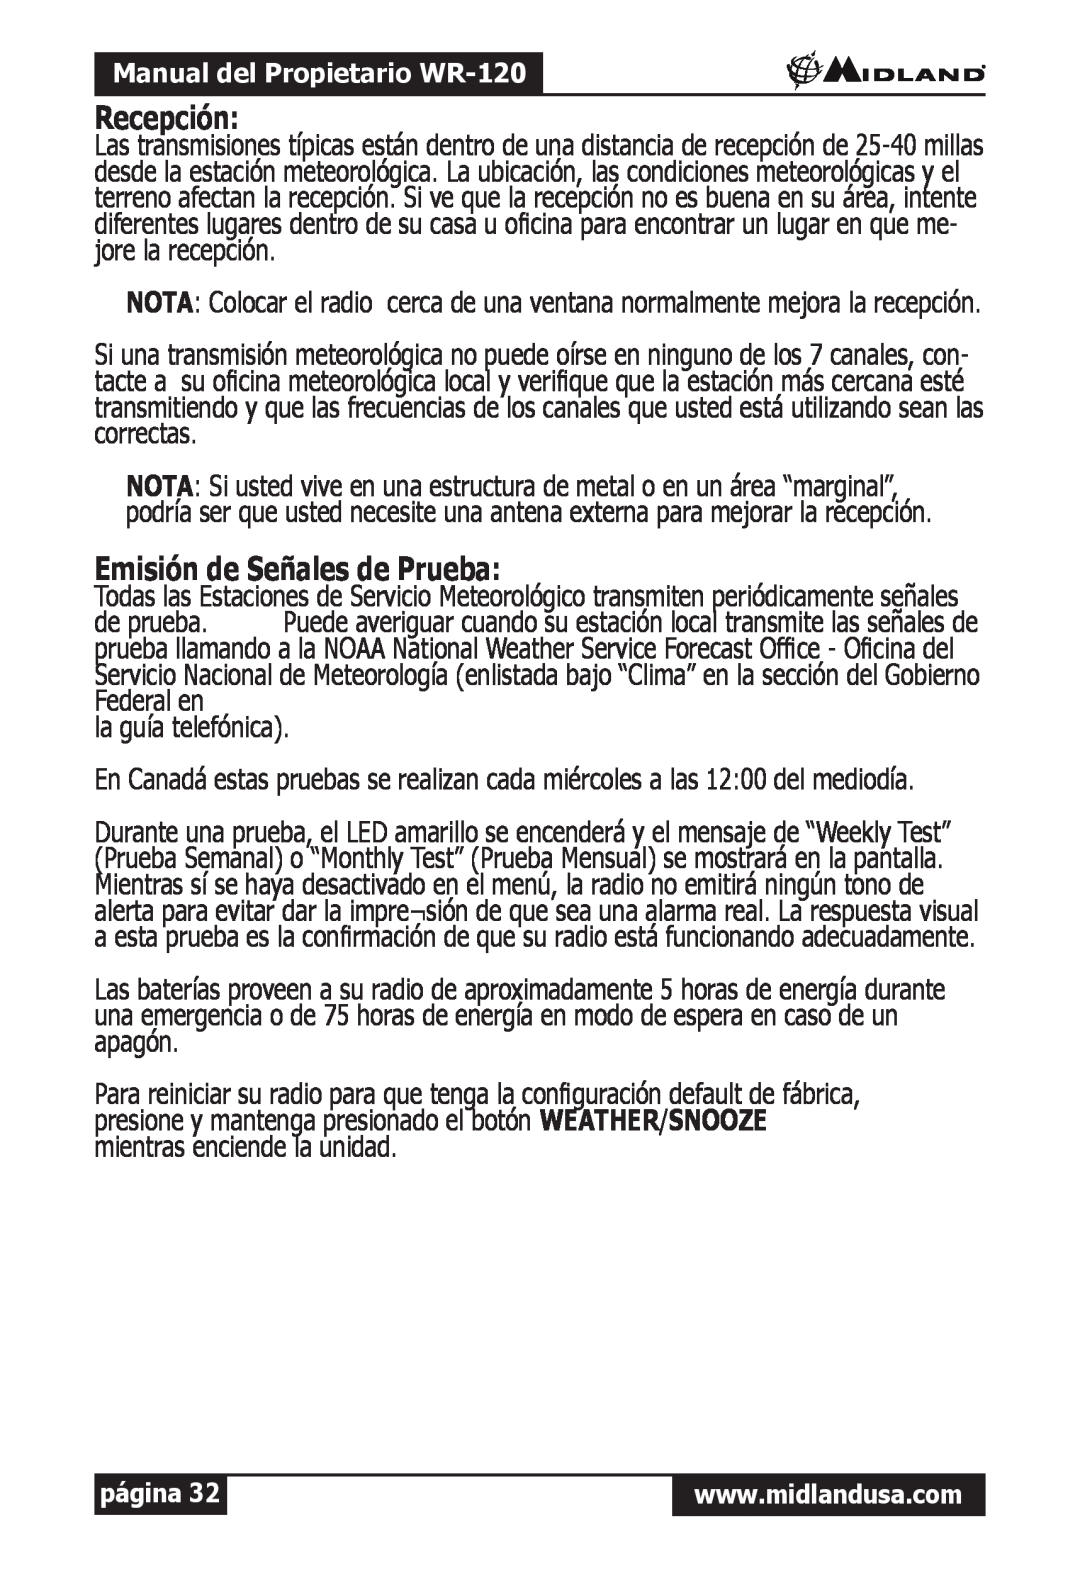 Midland Radio WR-120 owner manual Recepción, Emisión de Señales de Prueba 